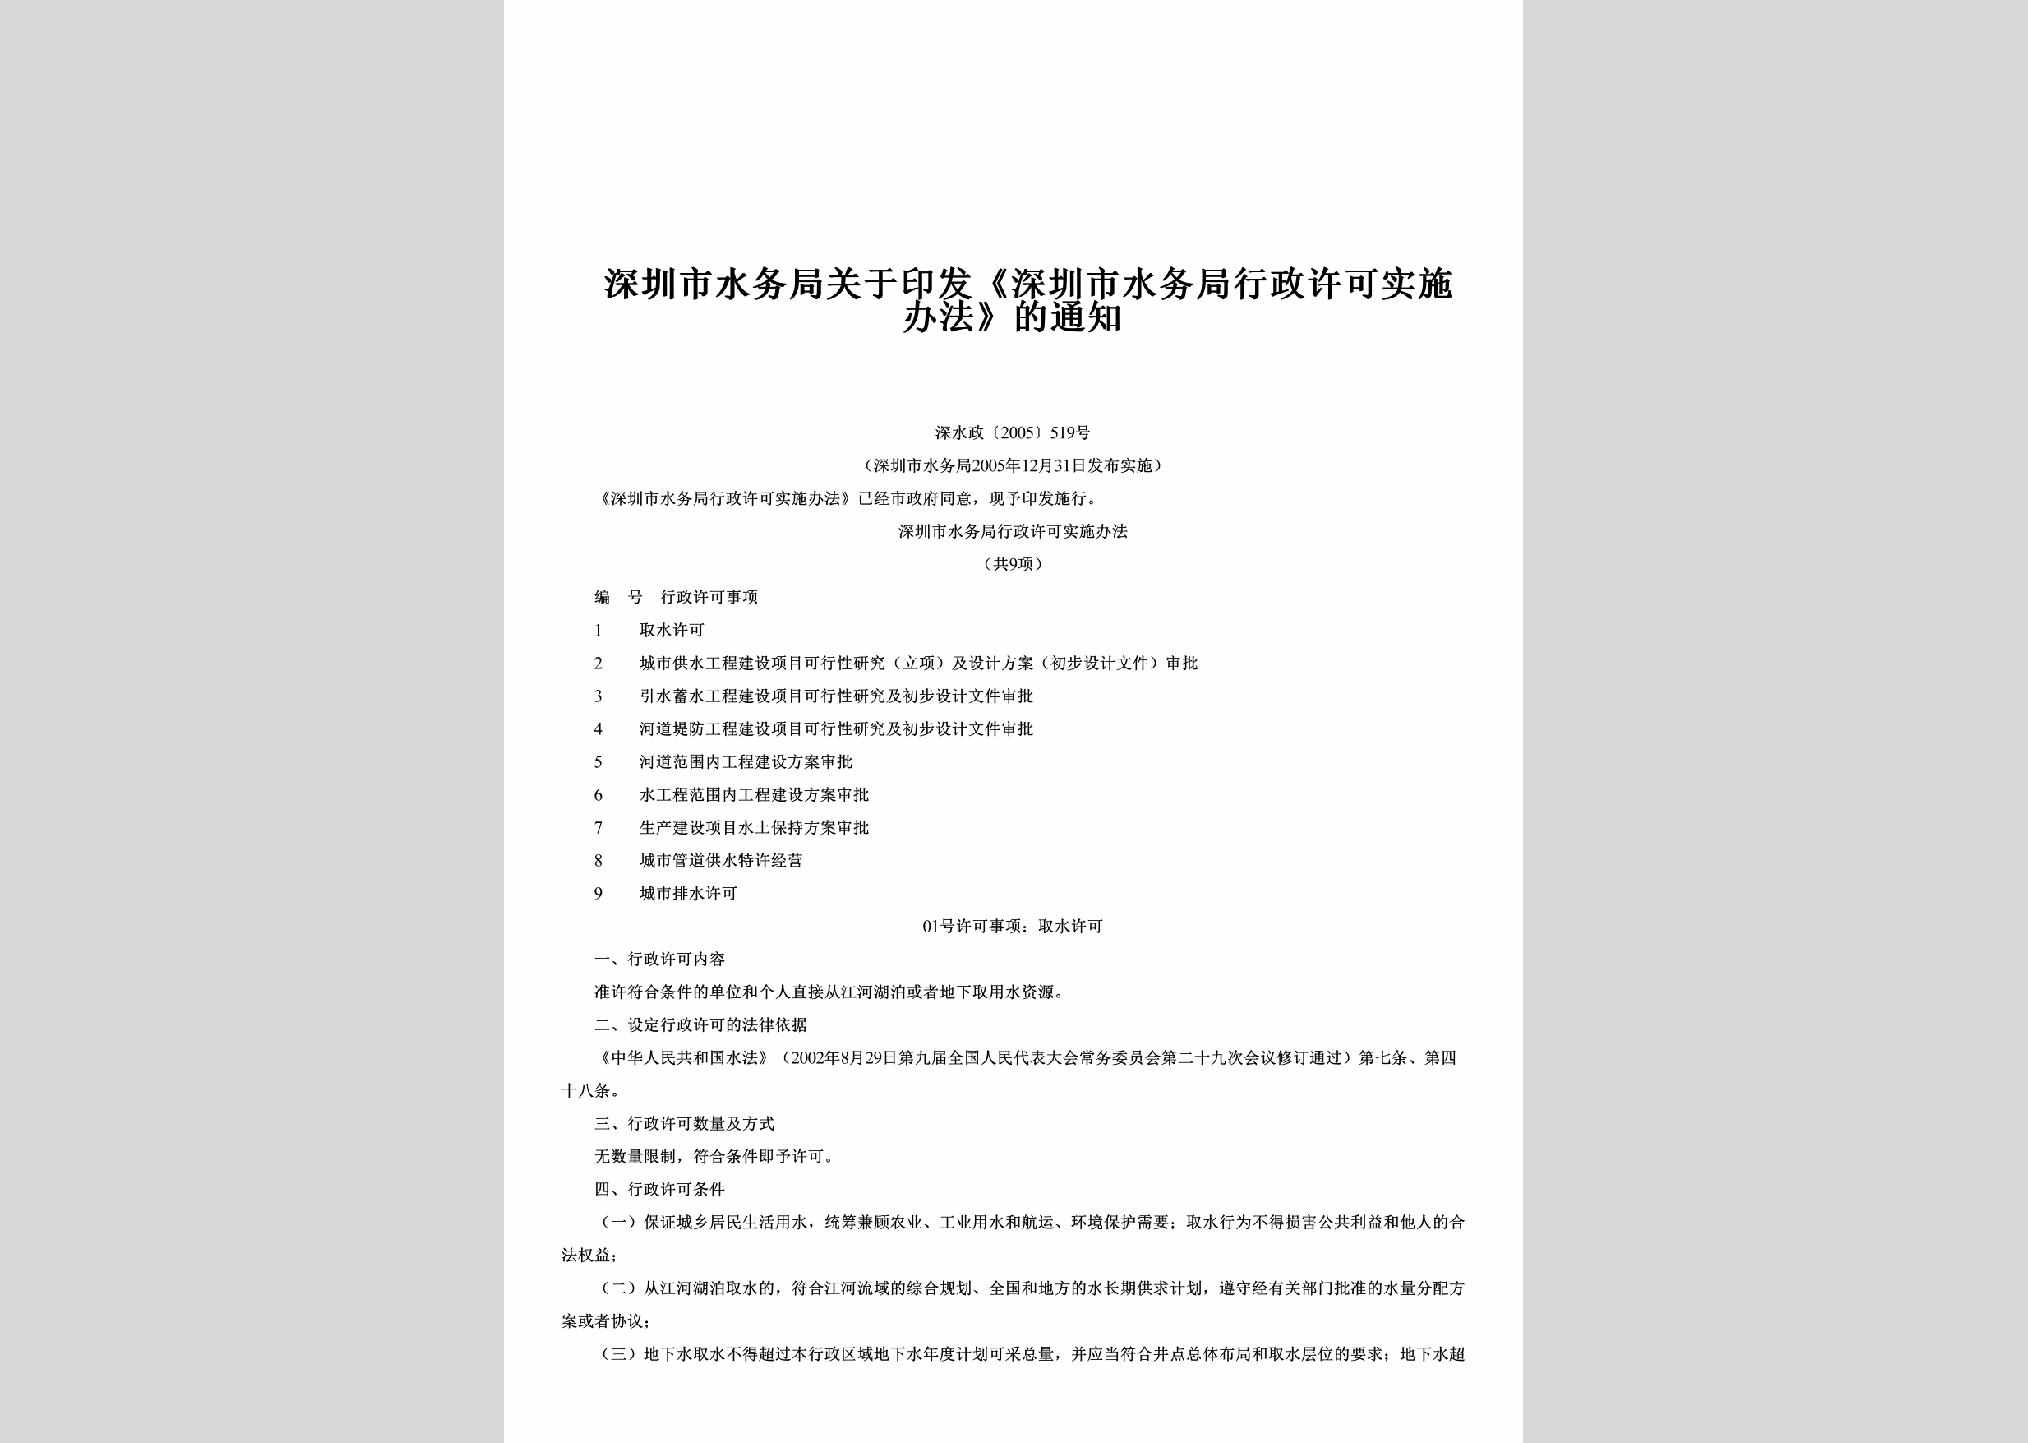 深水政[2005]519号：关于印发《深圳市水务局行政许可实施办法》的通知